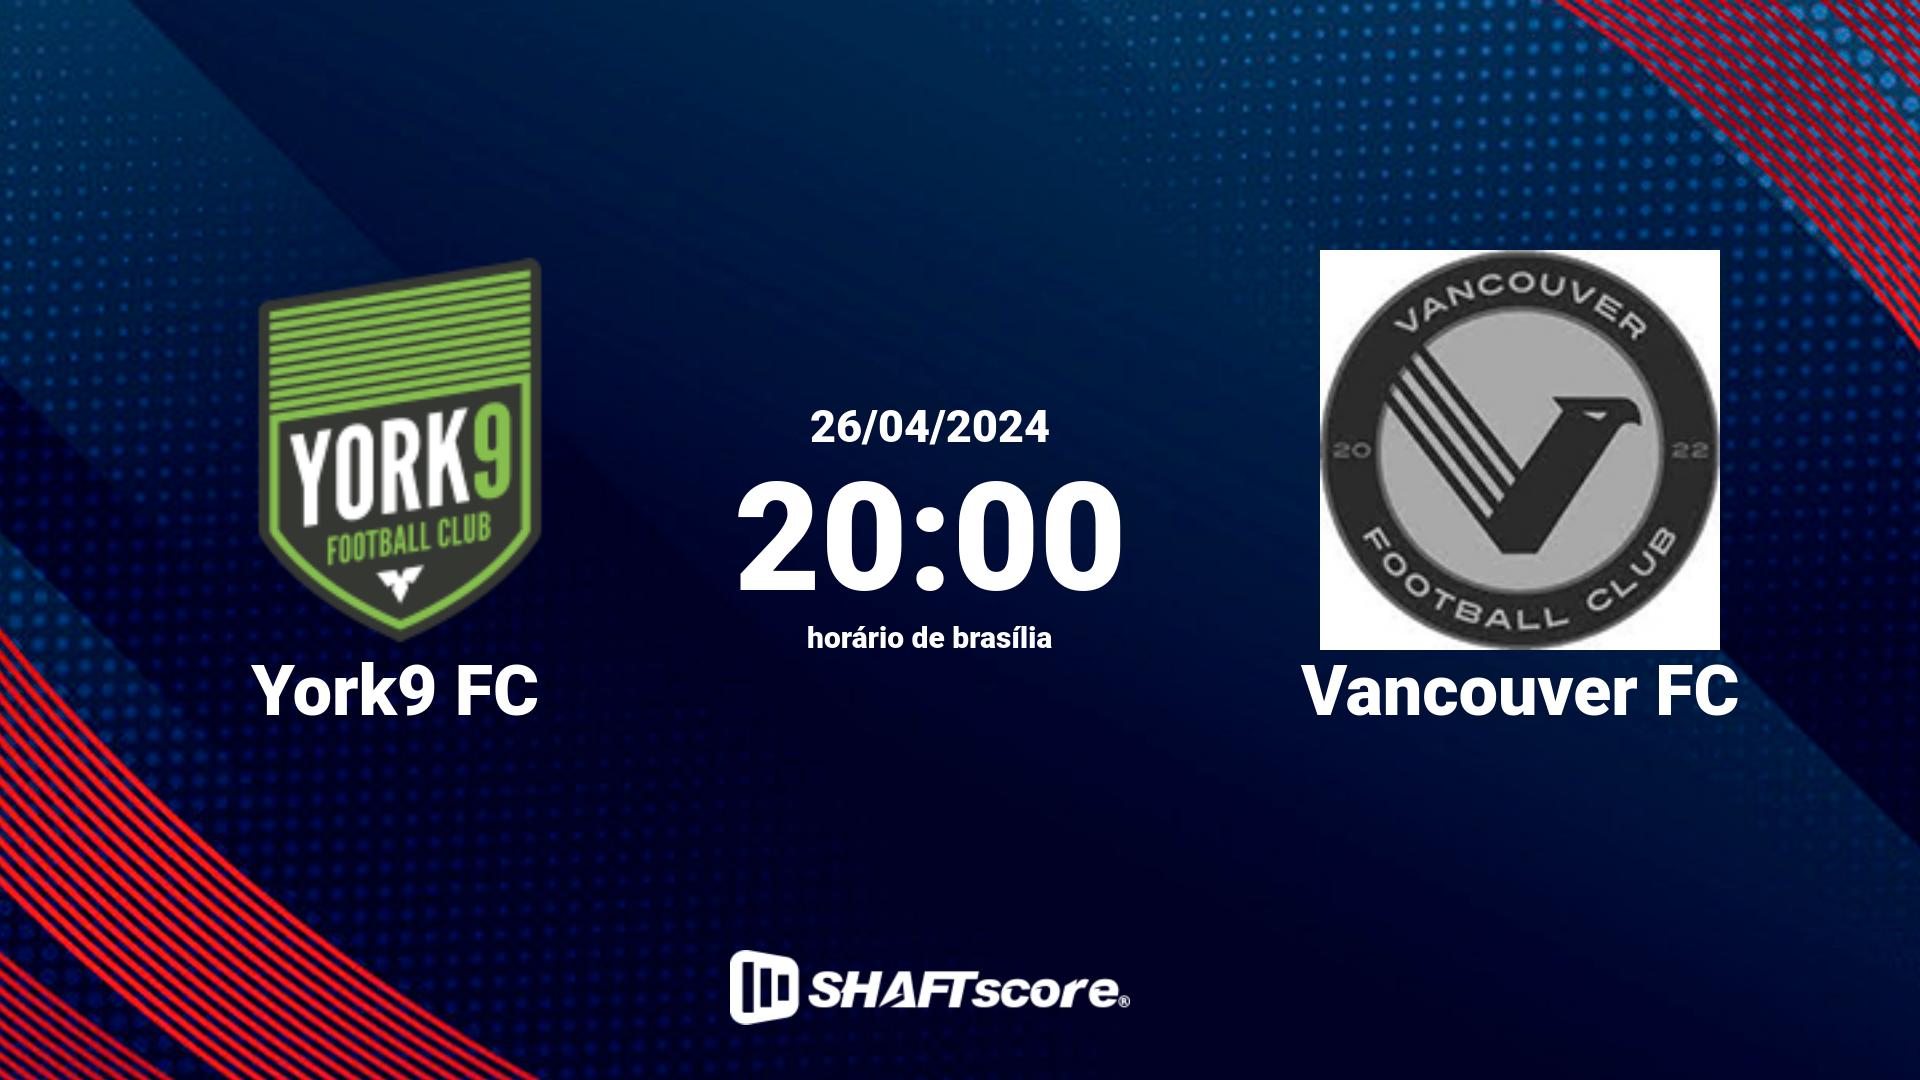 Estatísticas do jogo York9 FC vs Vancouver FC 26.04 20:00